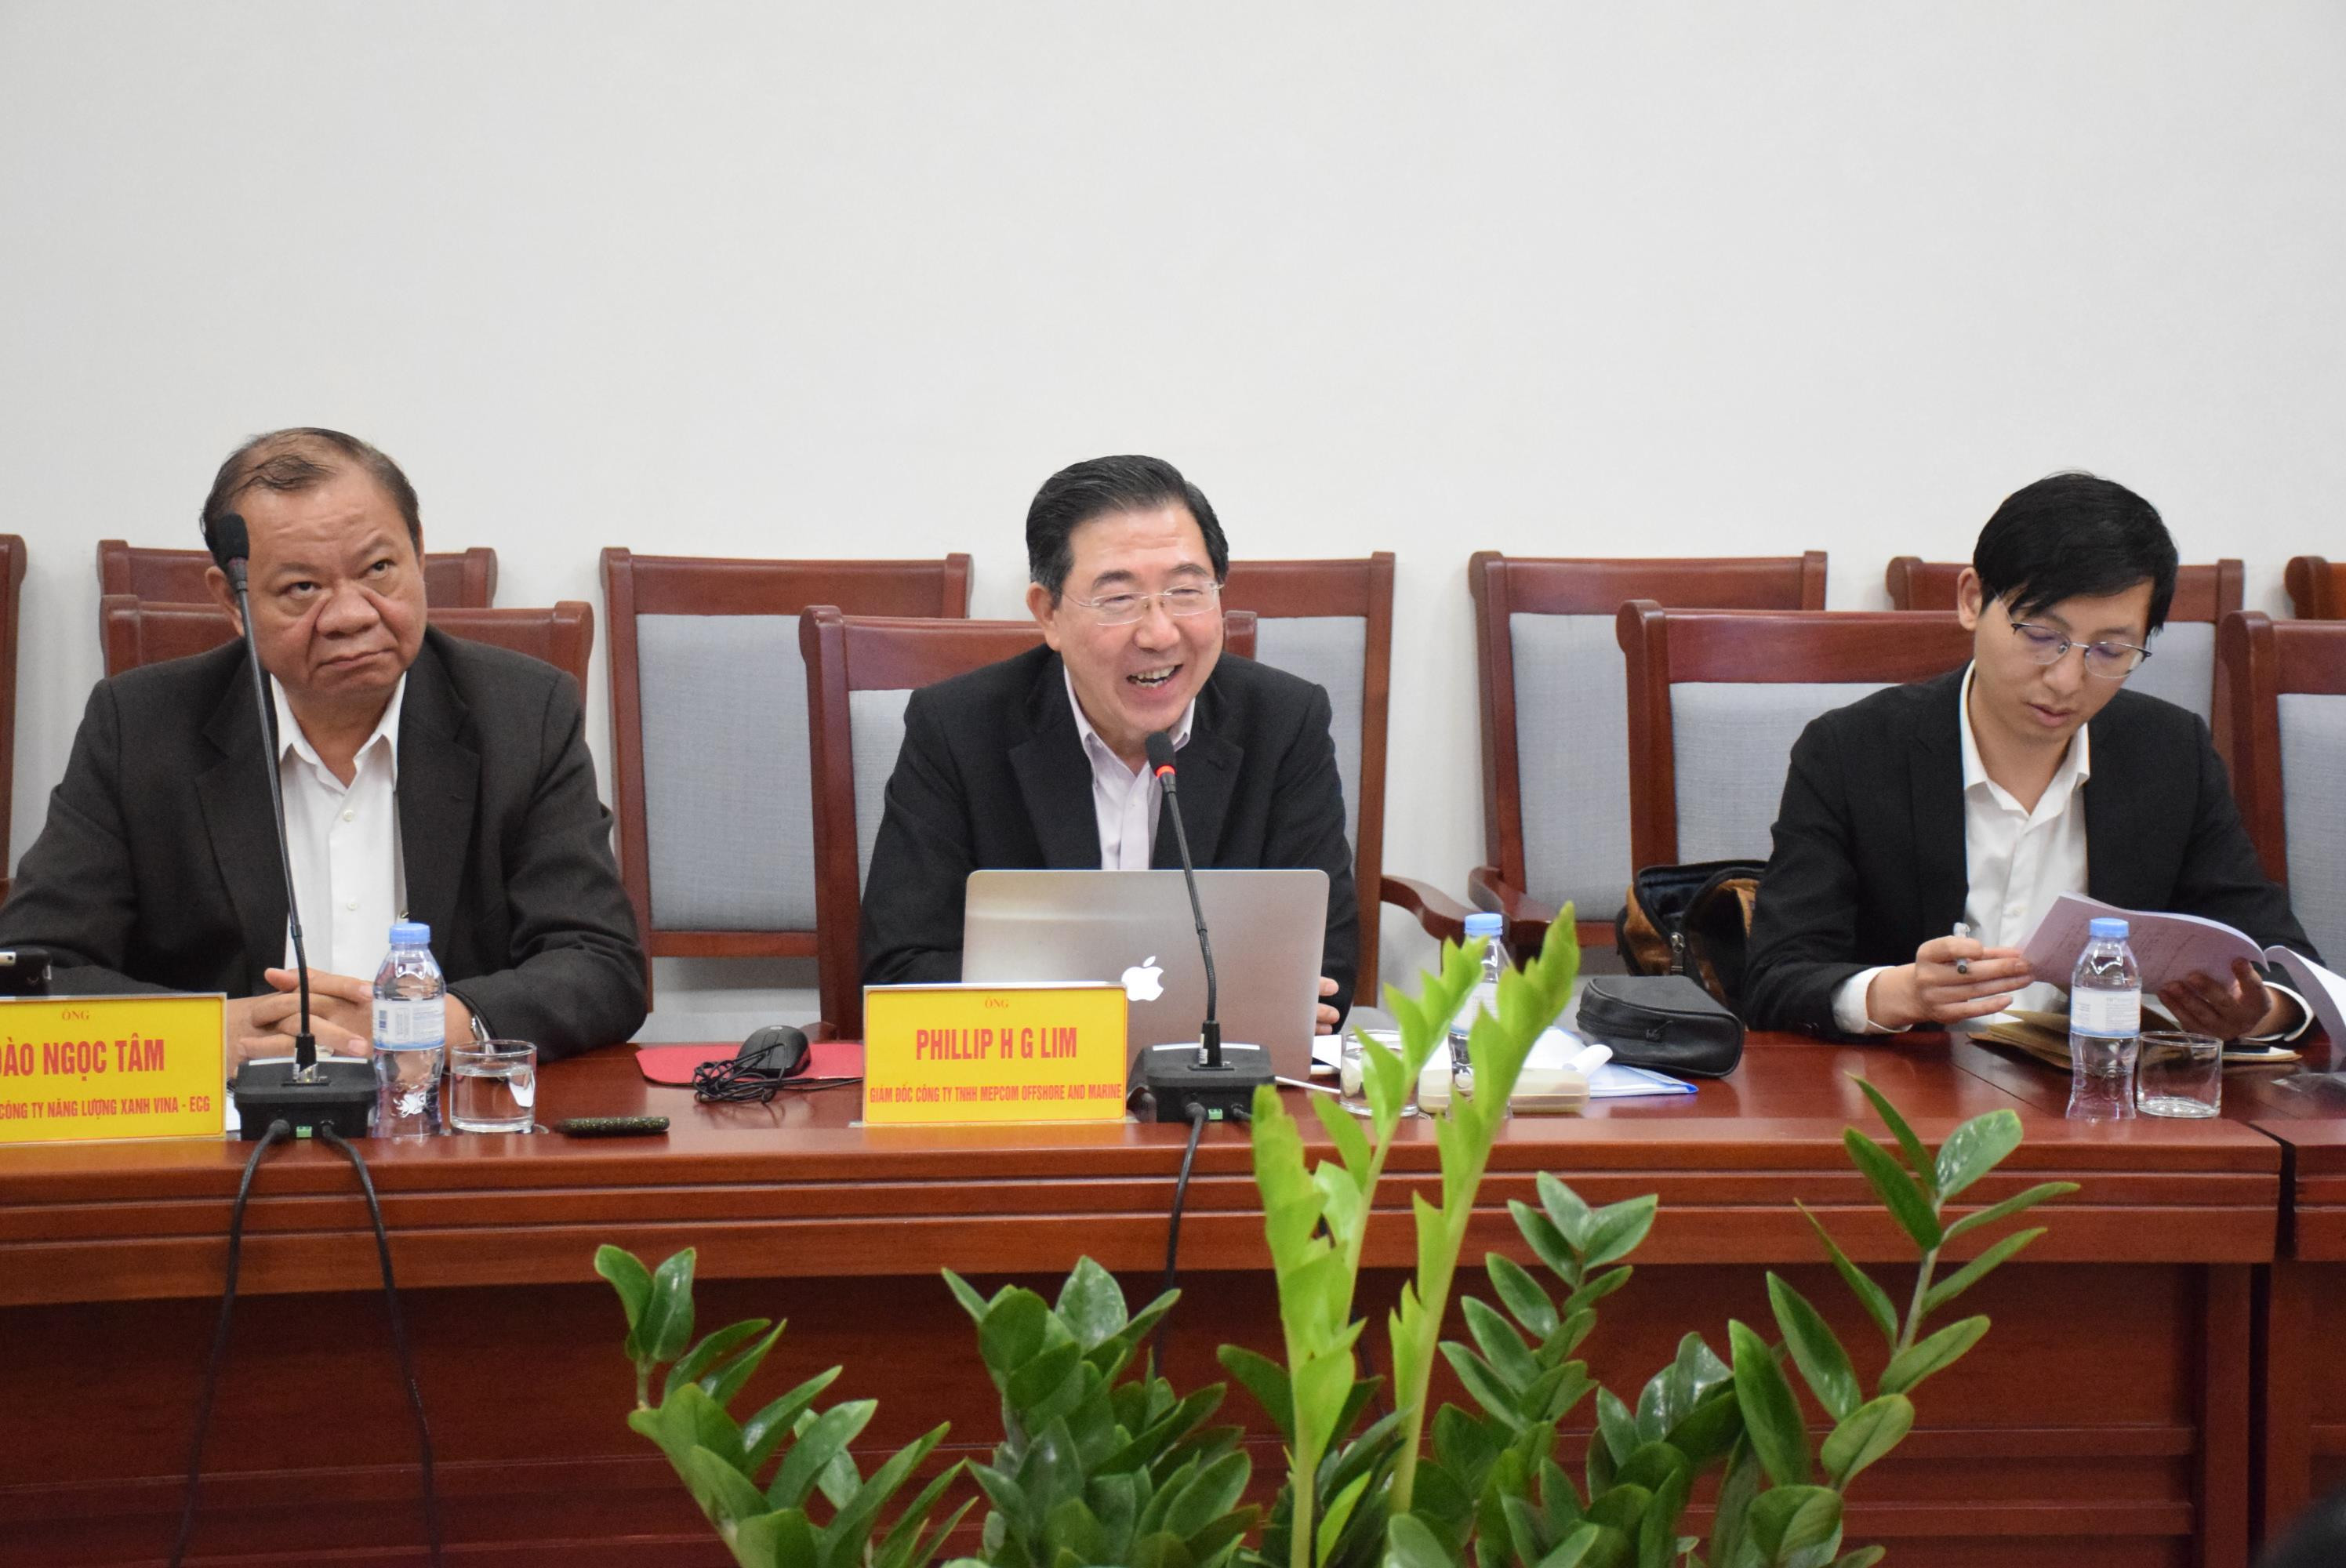 Ông Phillip H G Lim Tổng Giám đốc Công ty TNHH Mepcom Offshore and Marine cho Nghệ An biết những định hướng mà Tổng công ty sẽ đầu tư trên địa bàn tỉnh. Ảnh: Xuân Hoàng 